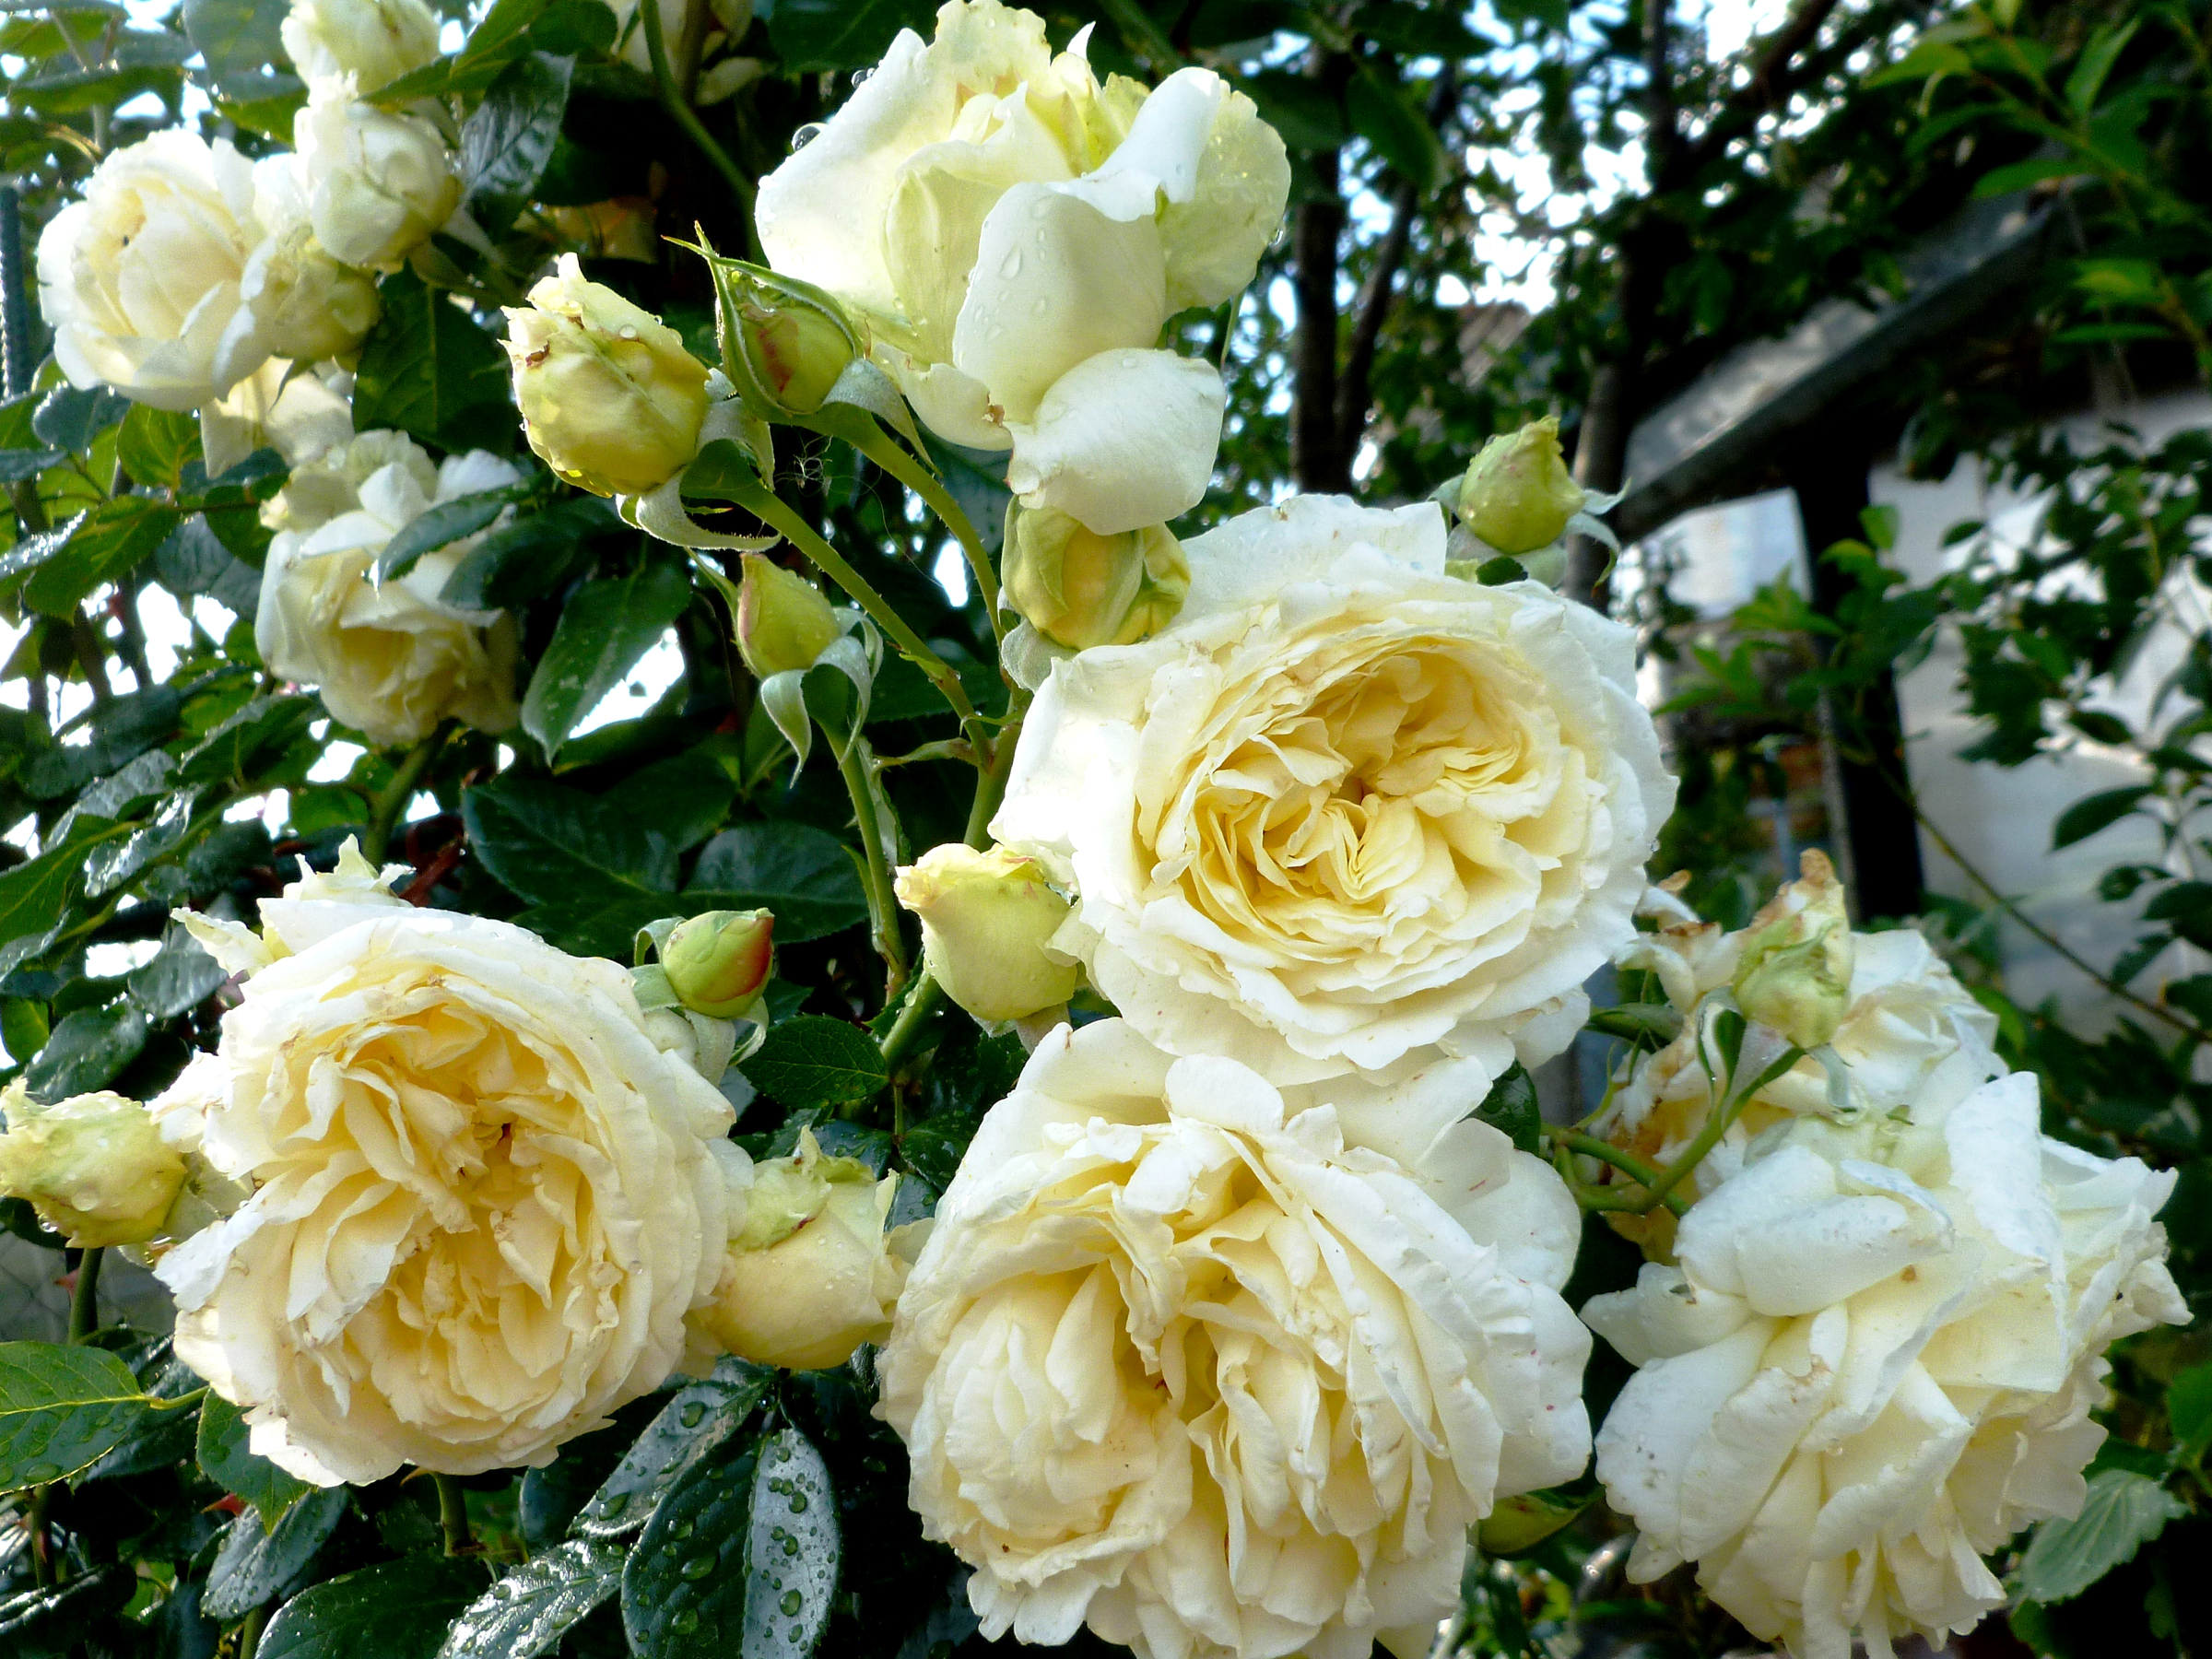 cream rose wallpaper,flower,rose,garden roses,flowering plant,julia child rose